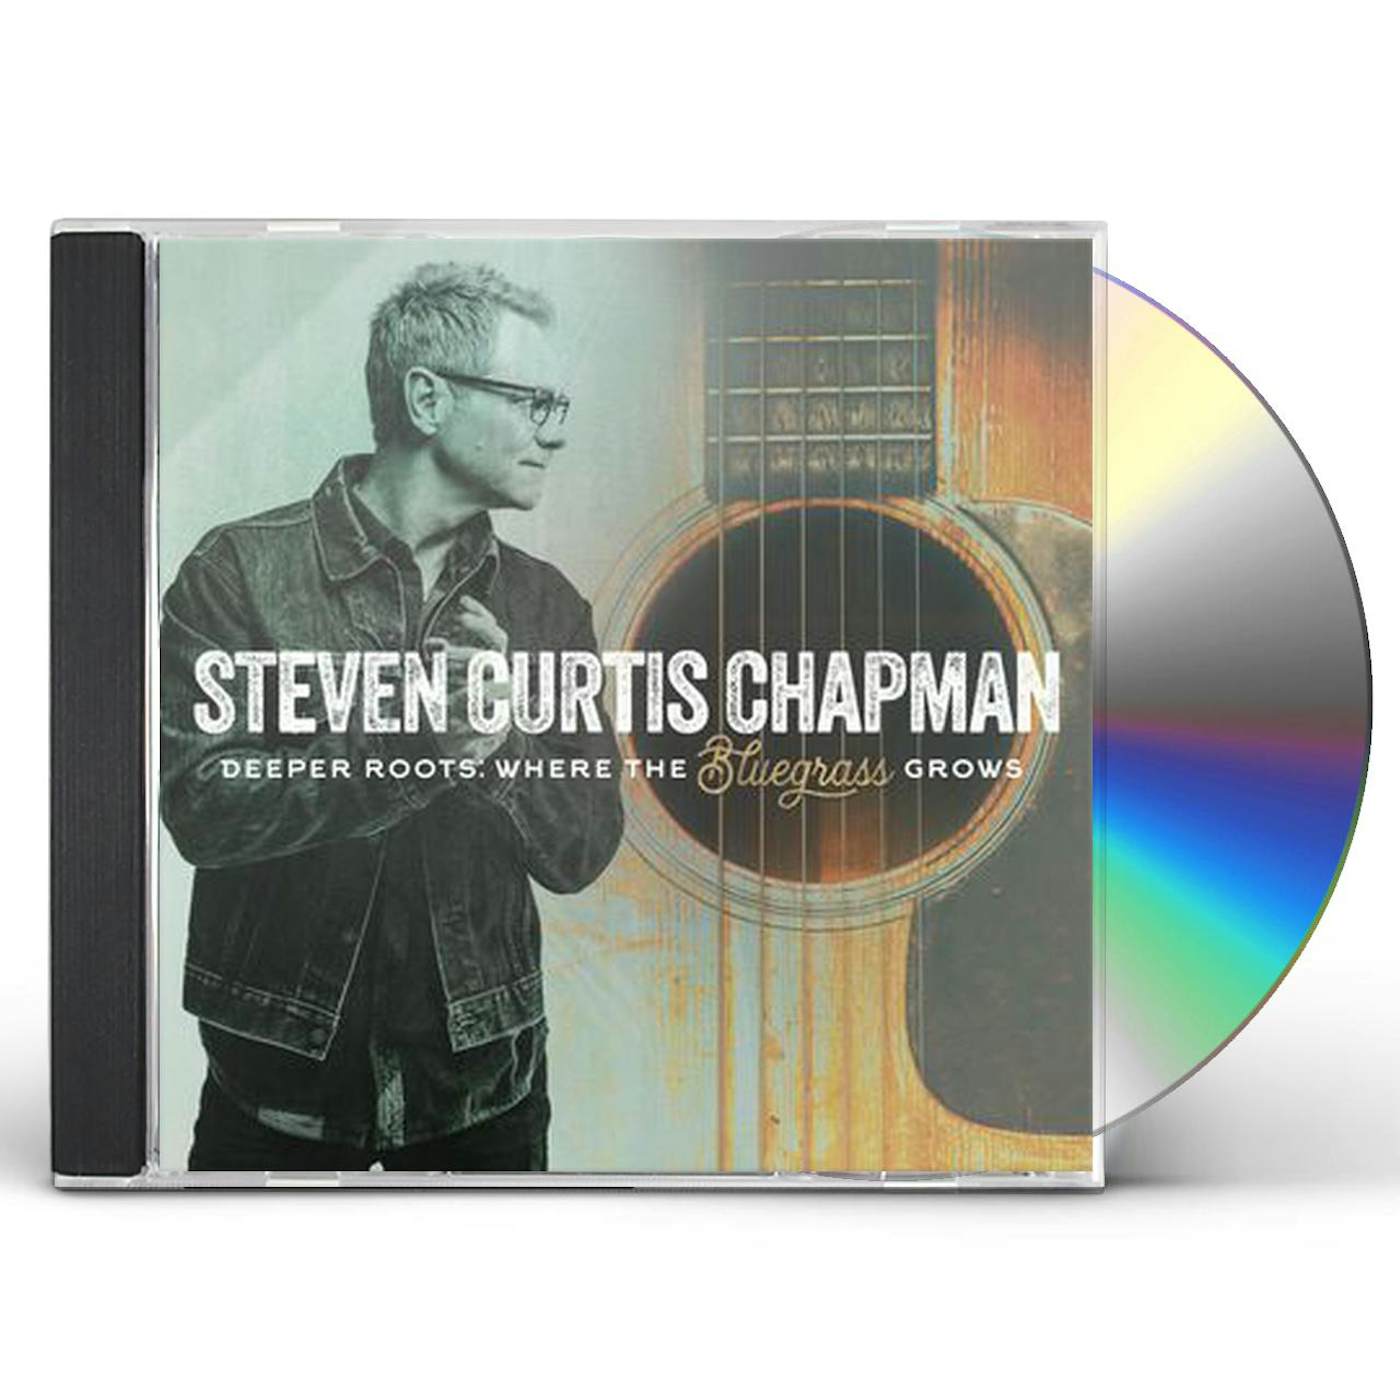 Steven Curtis Chapman DEEPER ROOTS: WHERE THE BLUEGRASS GROWS CD